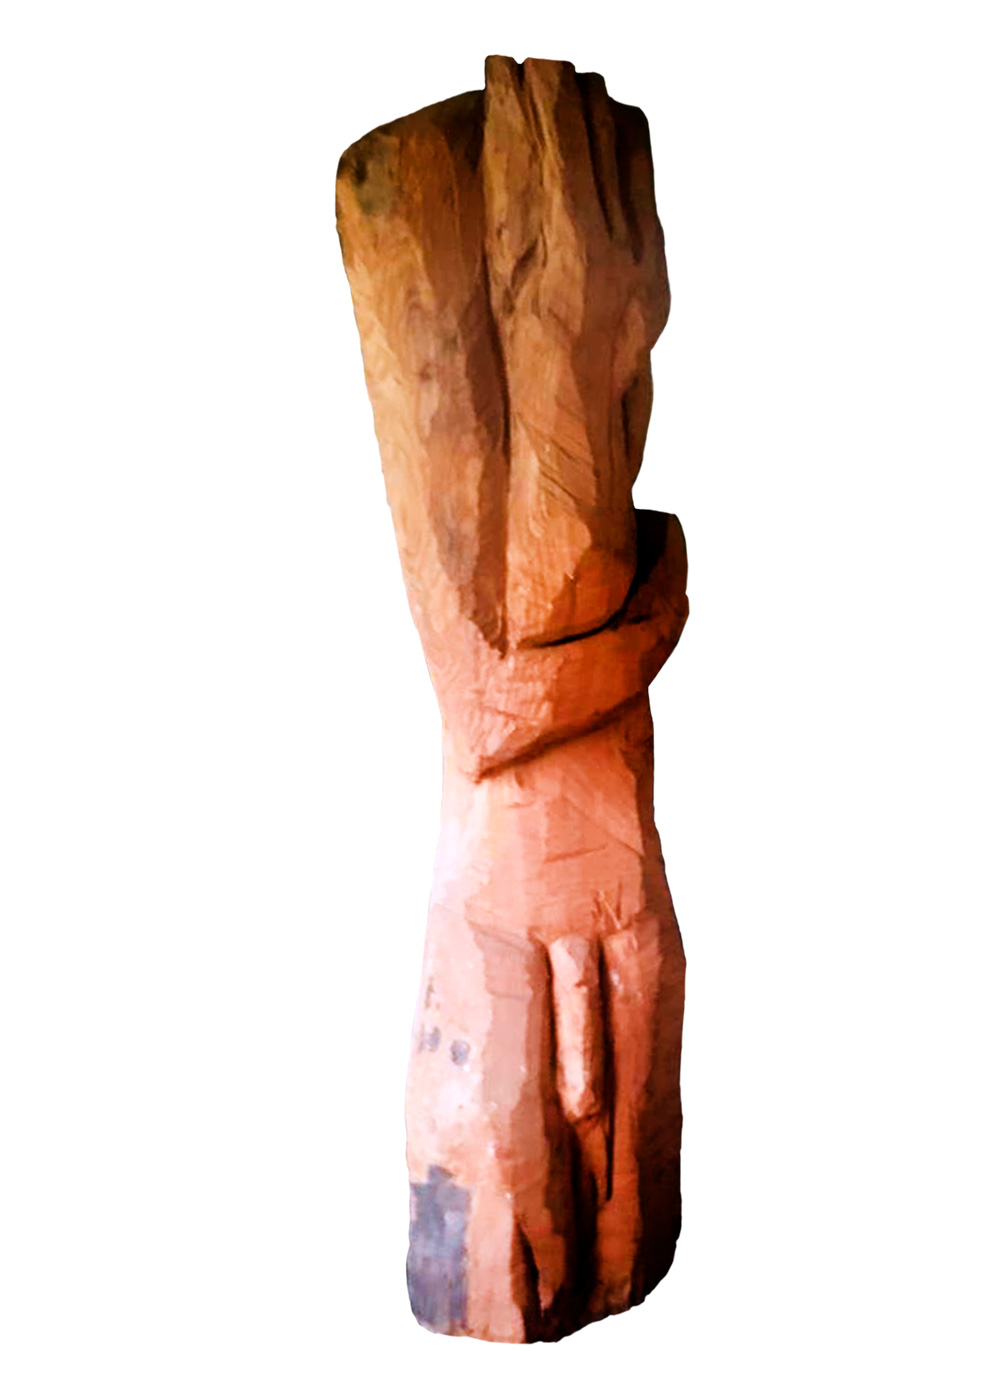 Man, a sculpture by Guido Vrolix